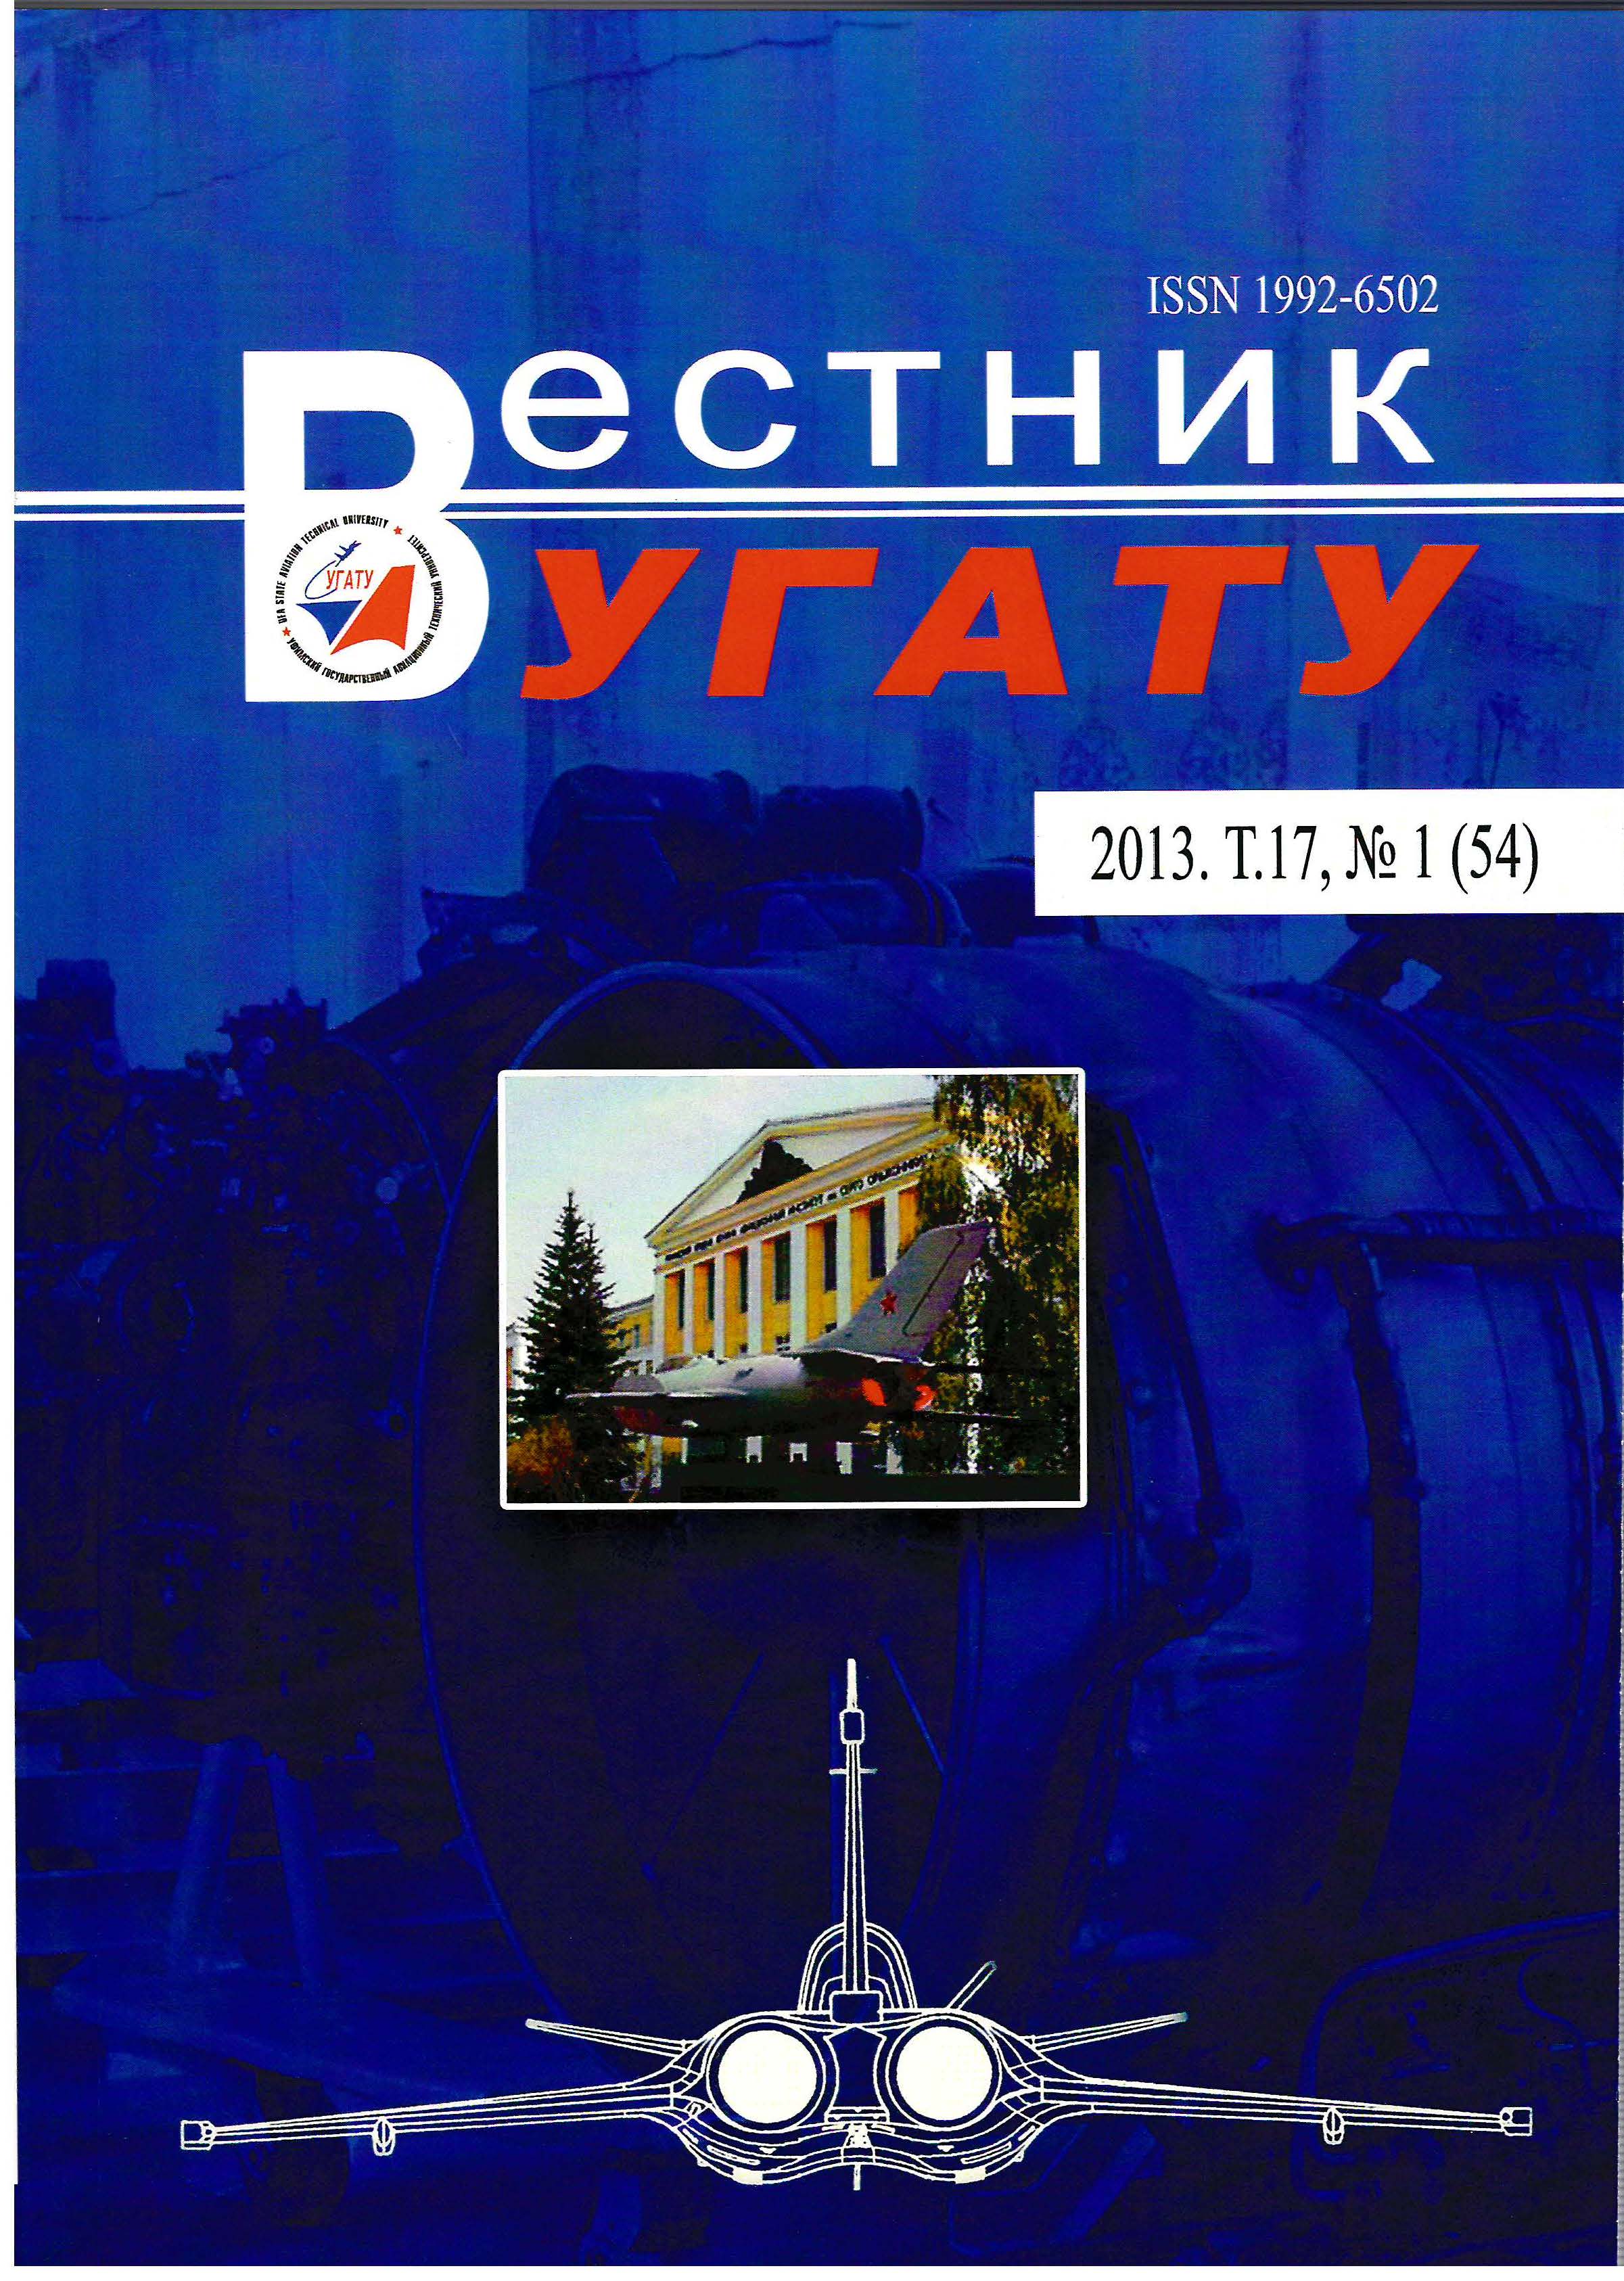 					View Vol. 17 No. 1 (54) (2013): Вестник УГАТУ
				